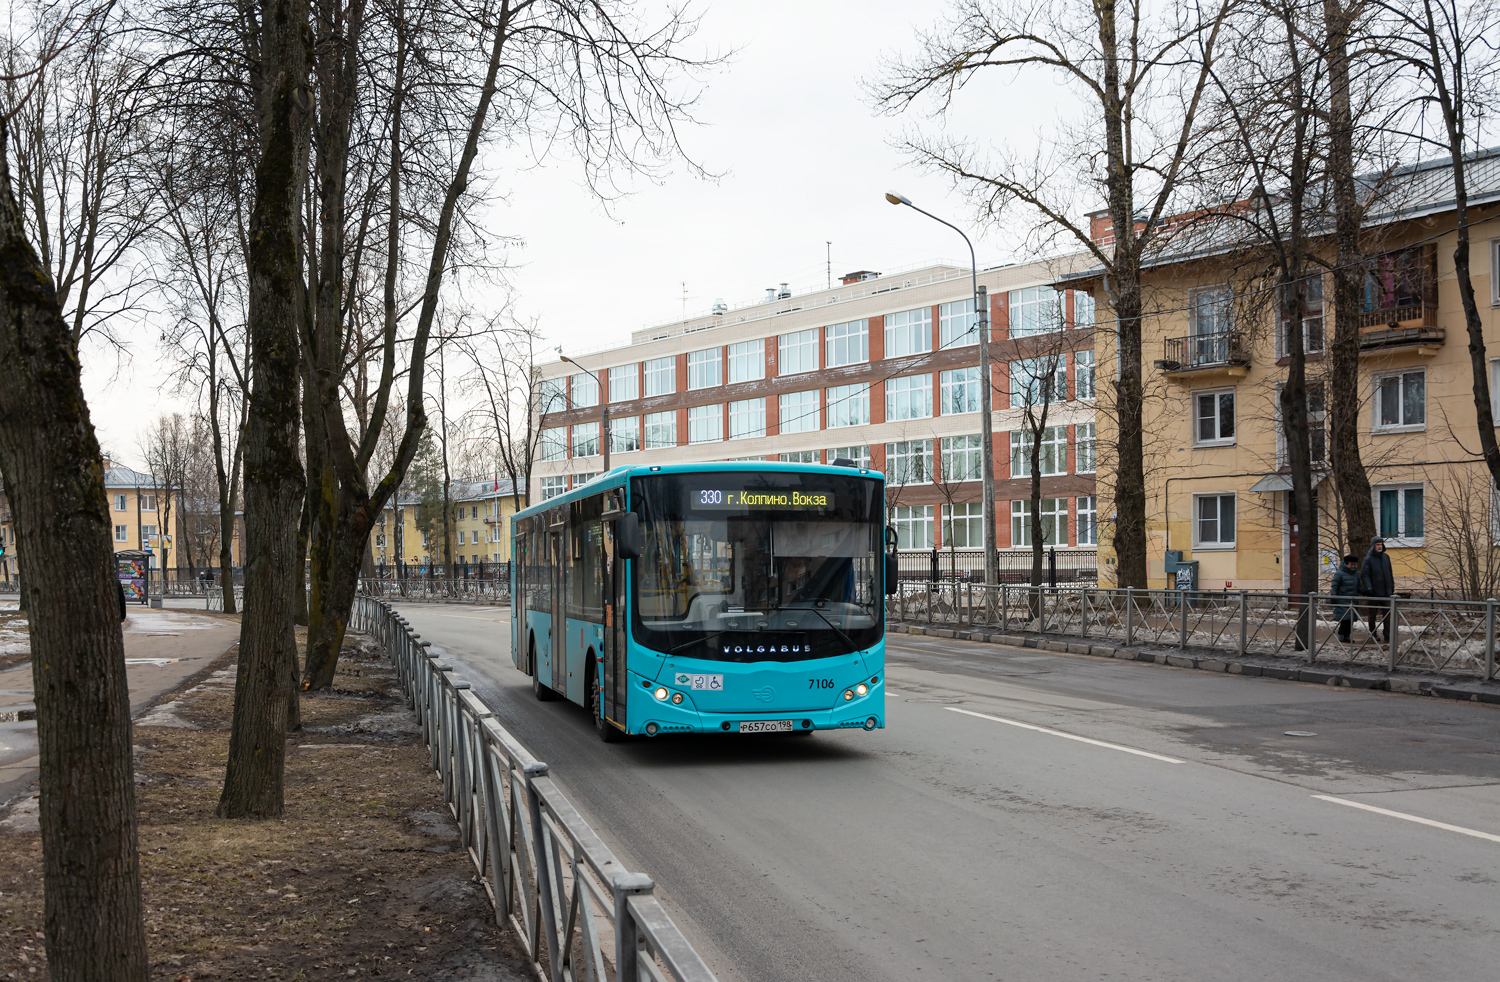 Pietari, Volgabus-5270.G4 (LNG) # 7106